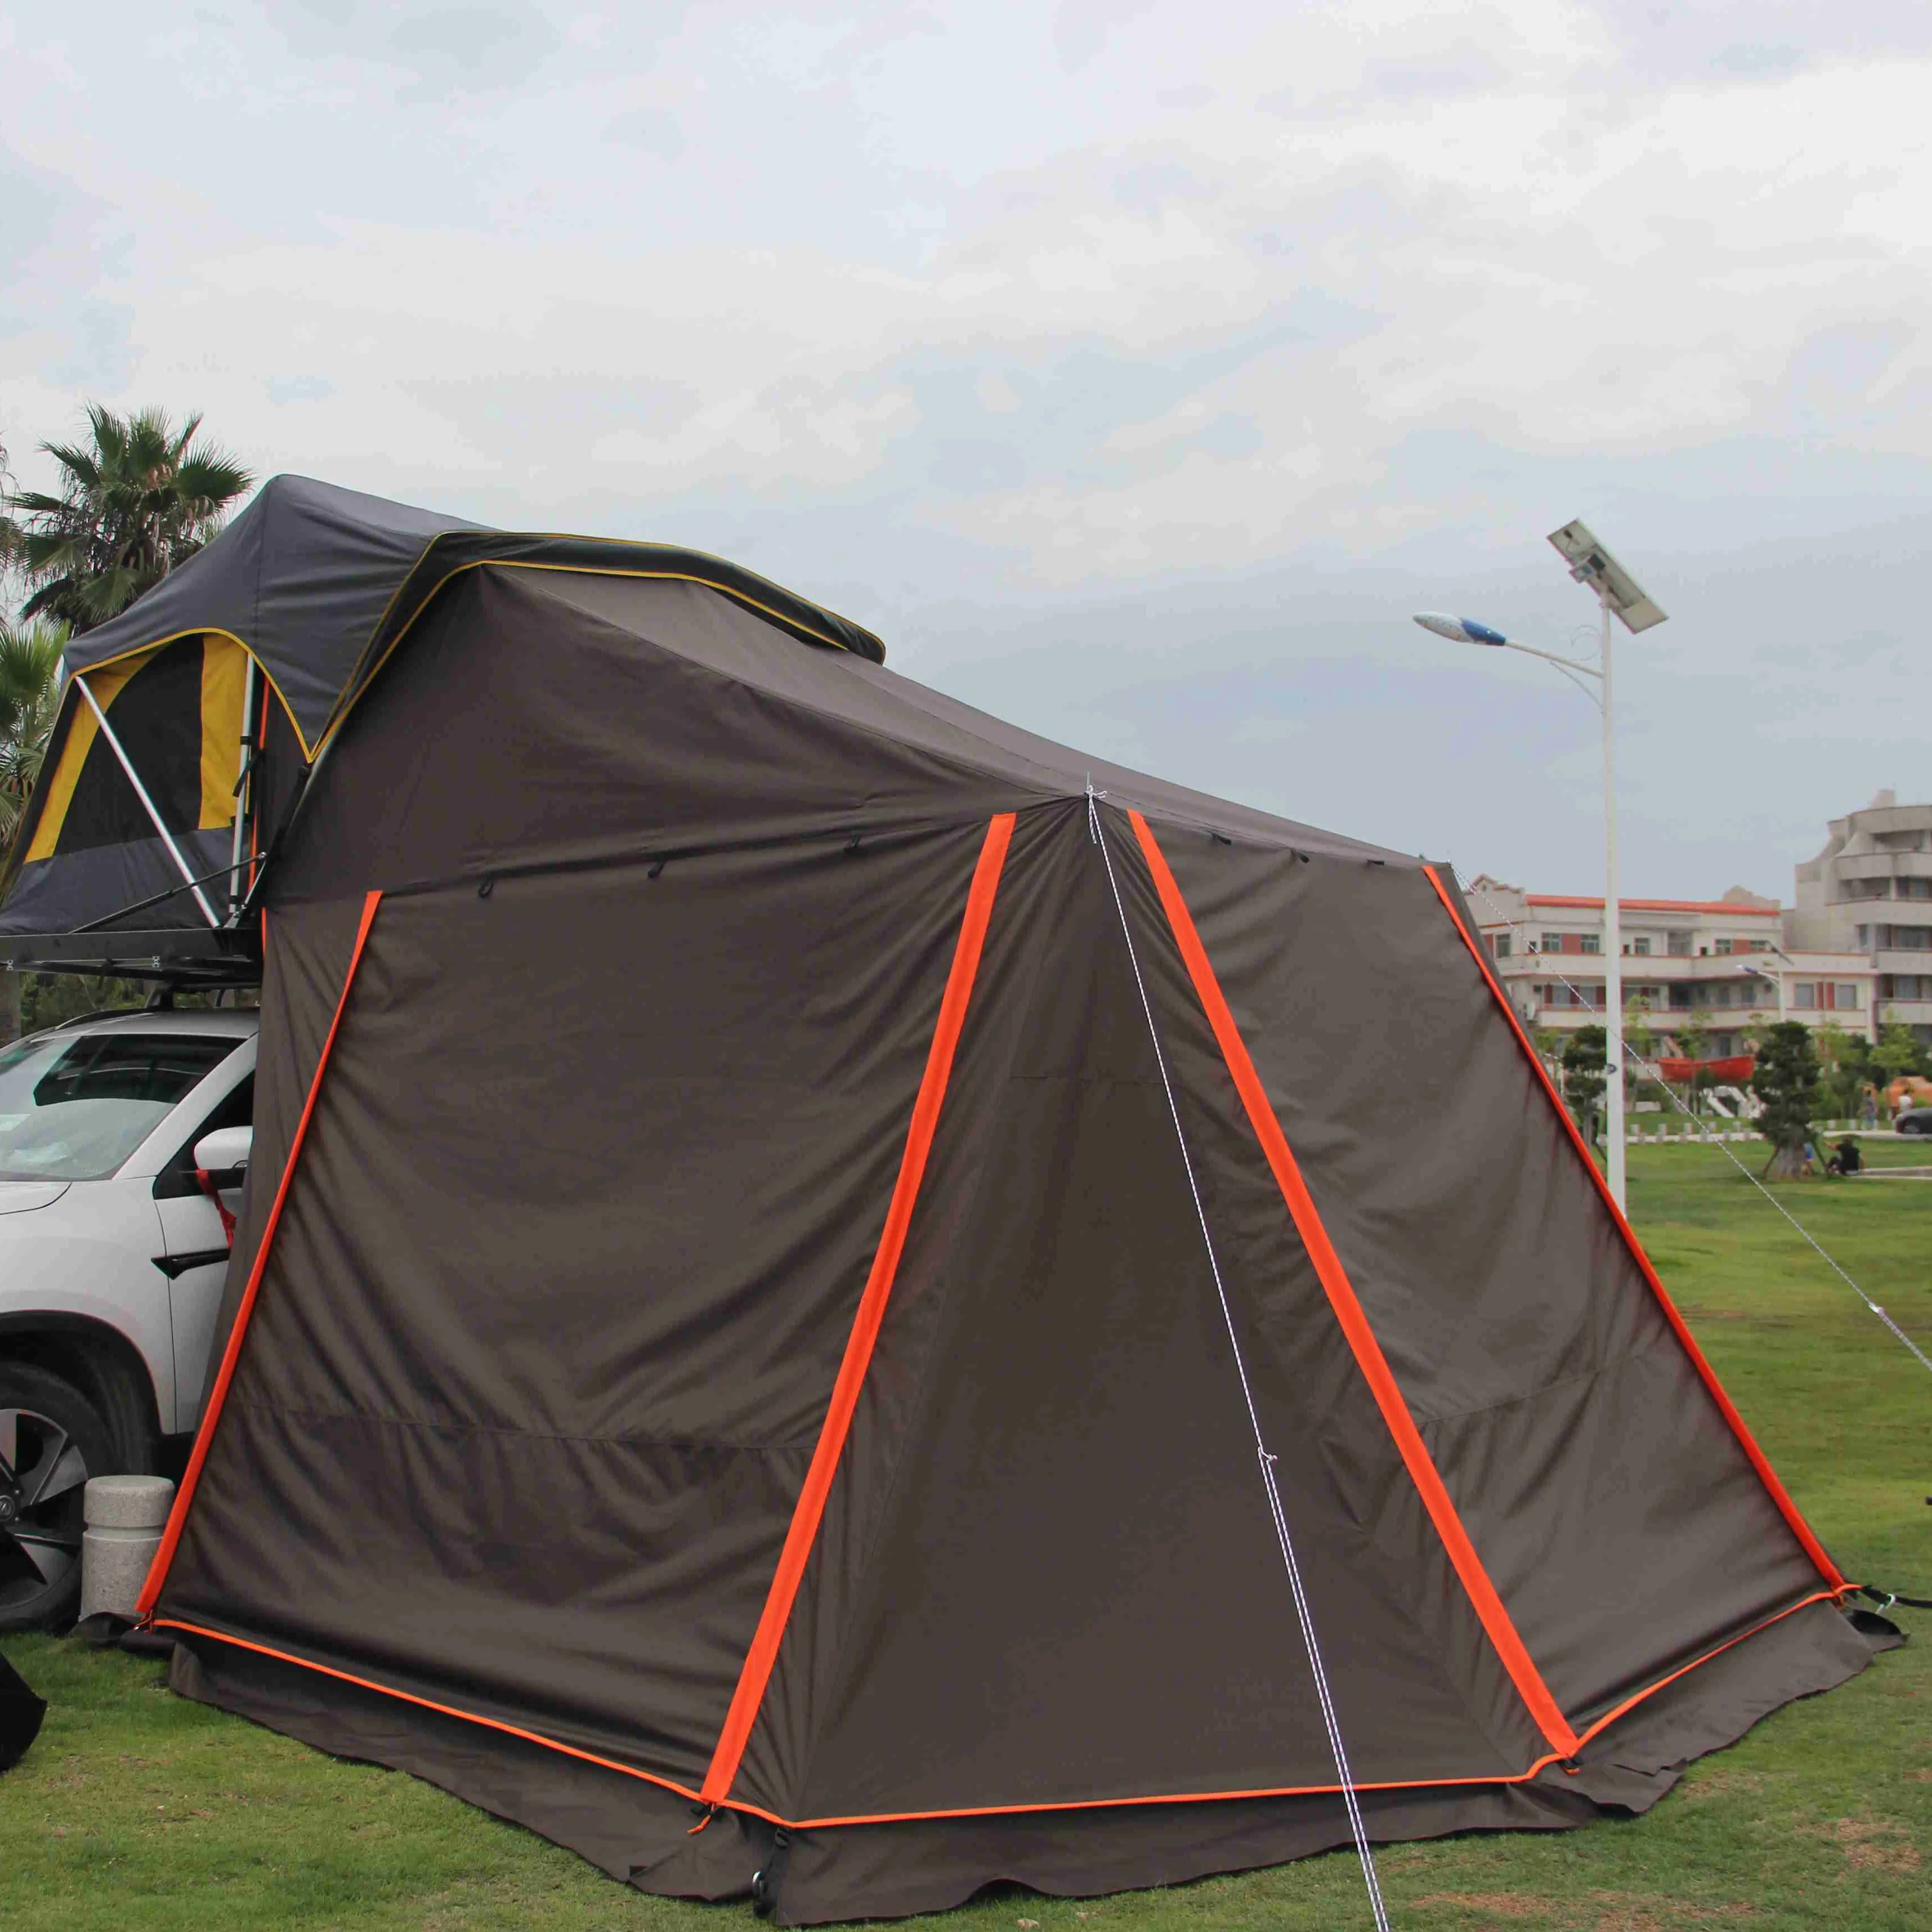 Commercio all'ingrosso di alta qualità tenda eventi tenda de lux roof top tenda camper